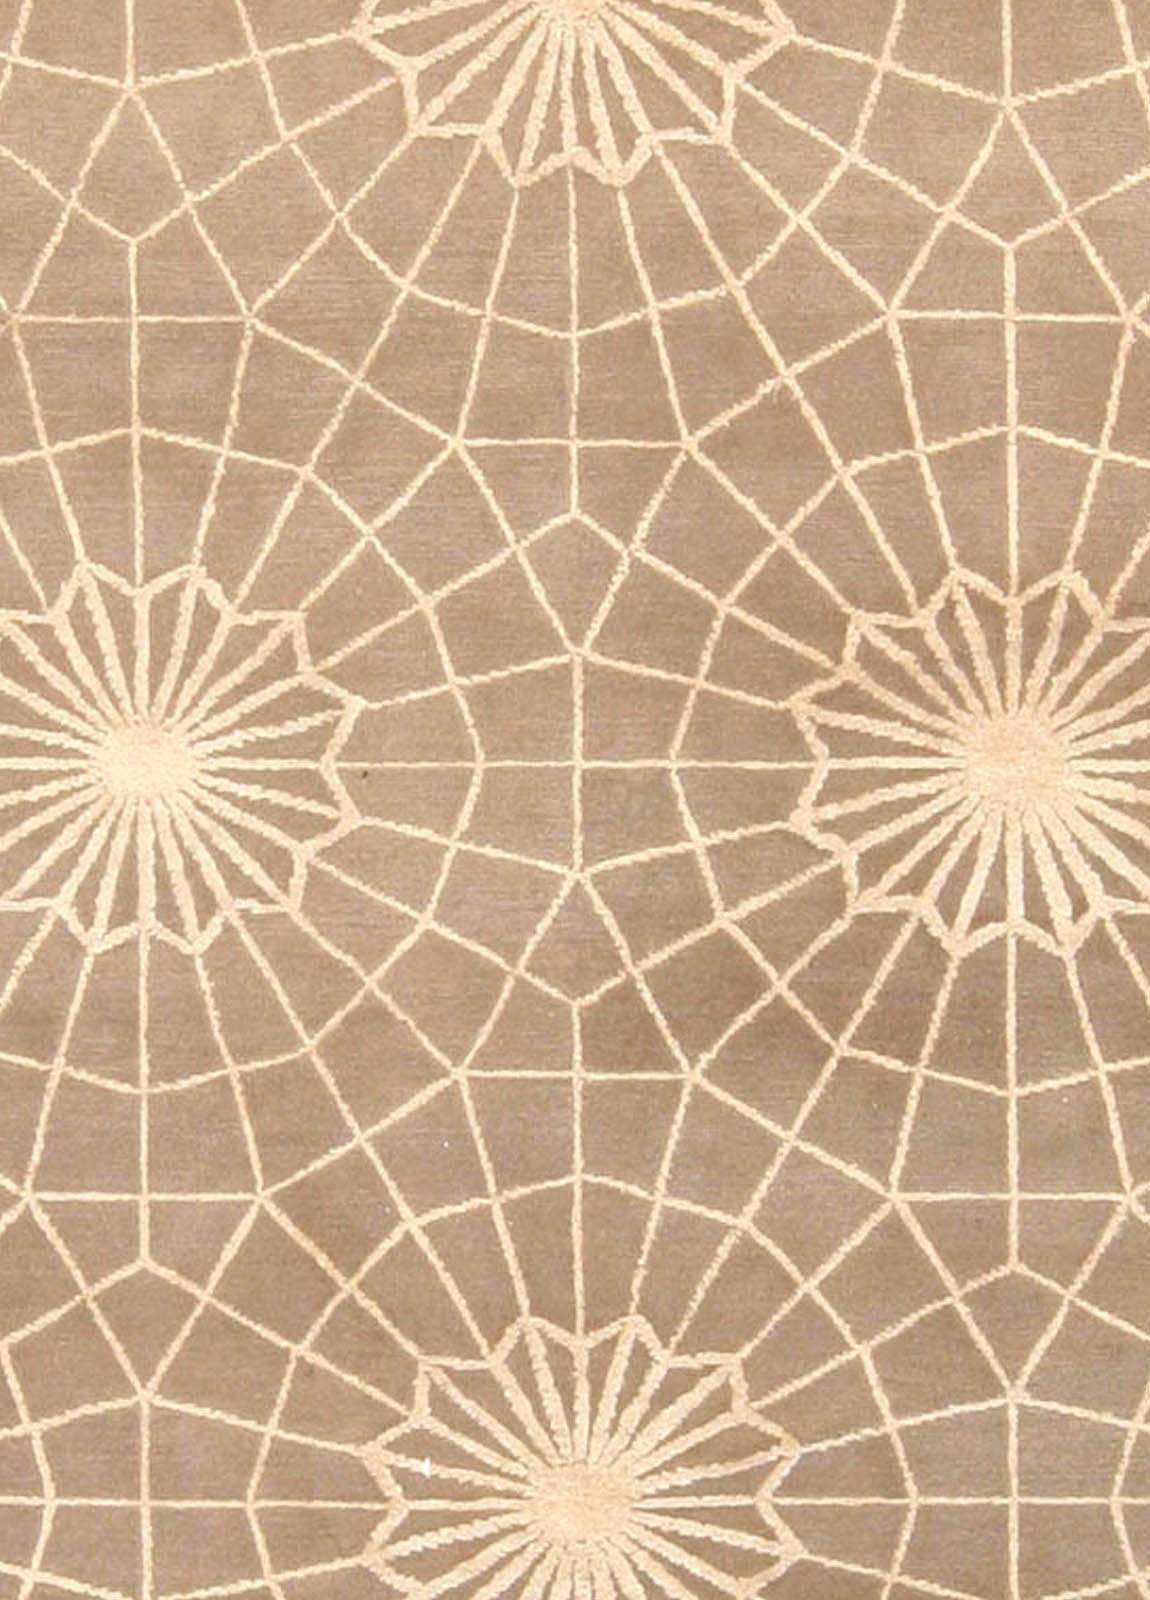 Modern Spider web rug by Doris Leslie Blau
Size: 9'0